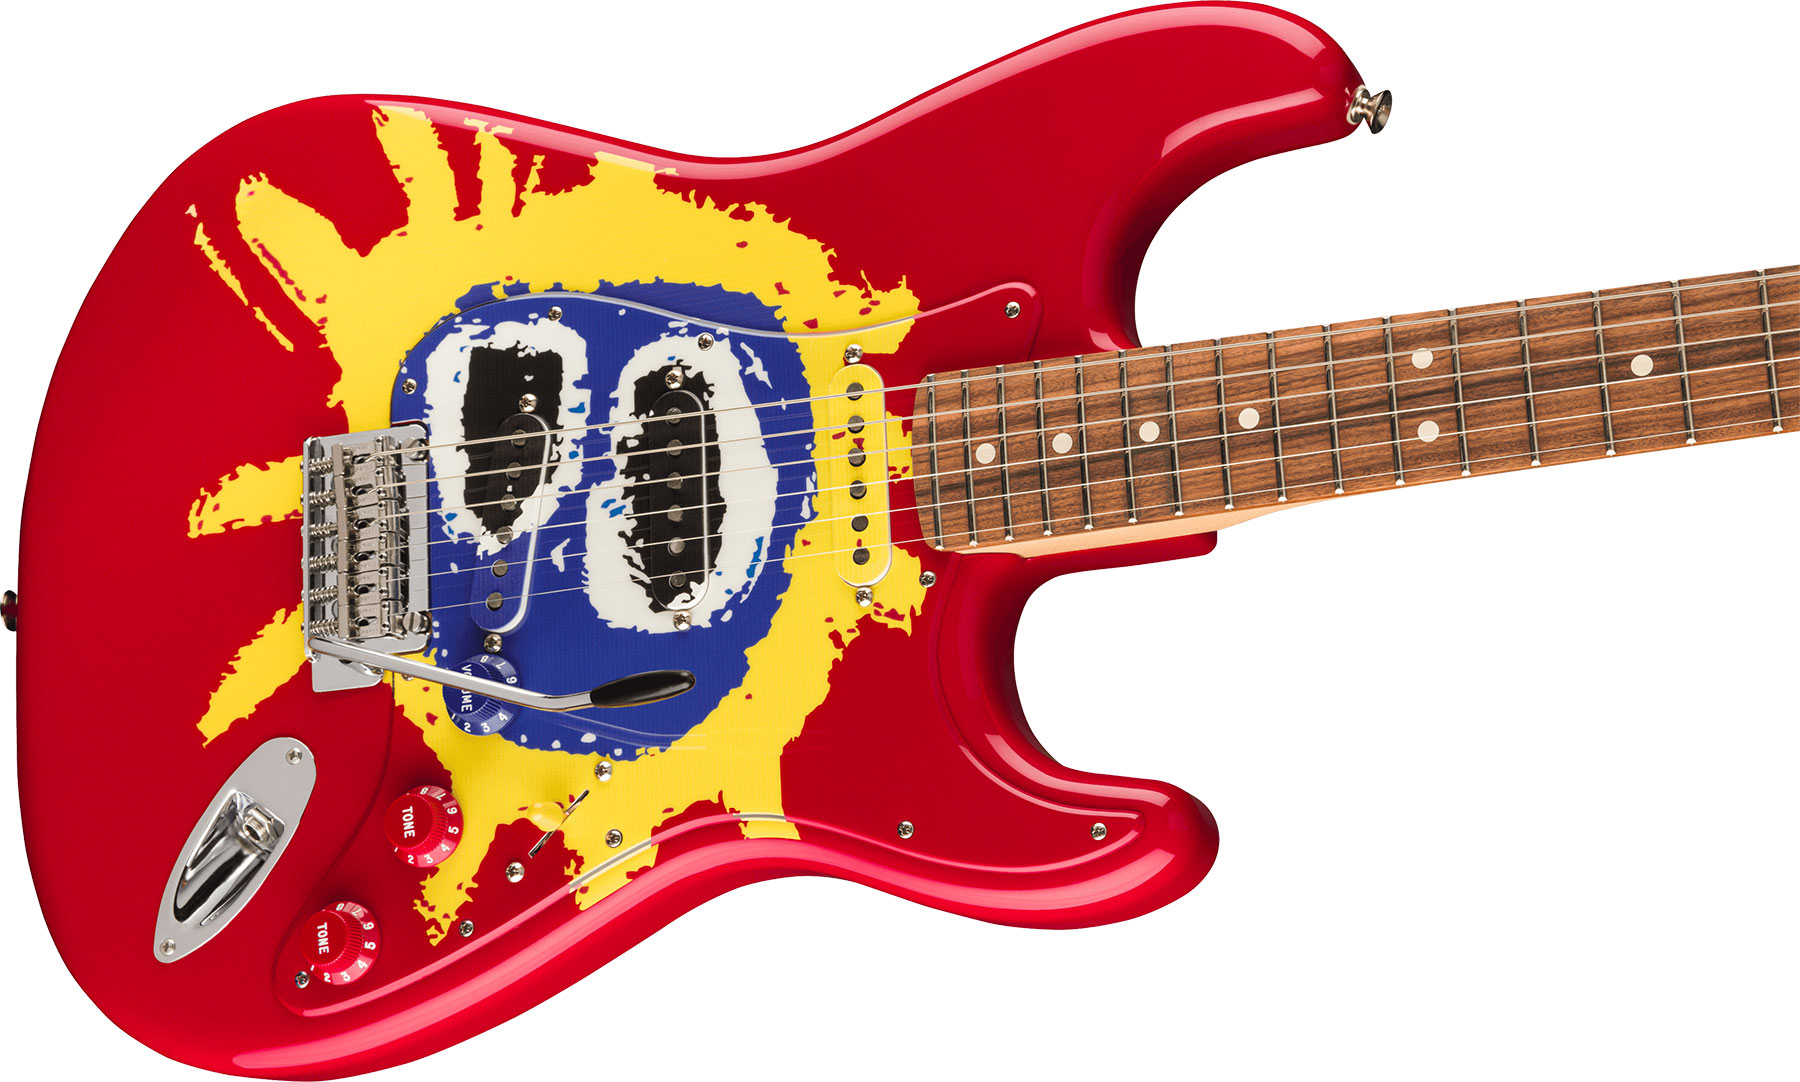 Fender Strat 30th Anniversary Screamadelica Ltd Mex 3s Trem Pf - Red Blue Yellow - Elektrische gitaar in Str-vorm - Variation 2